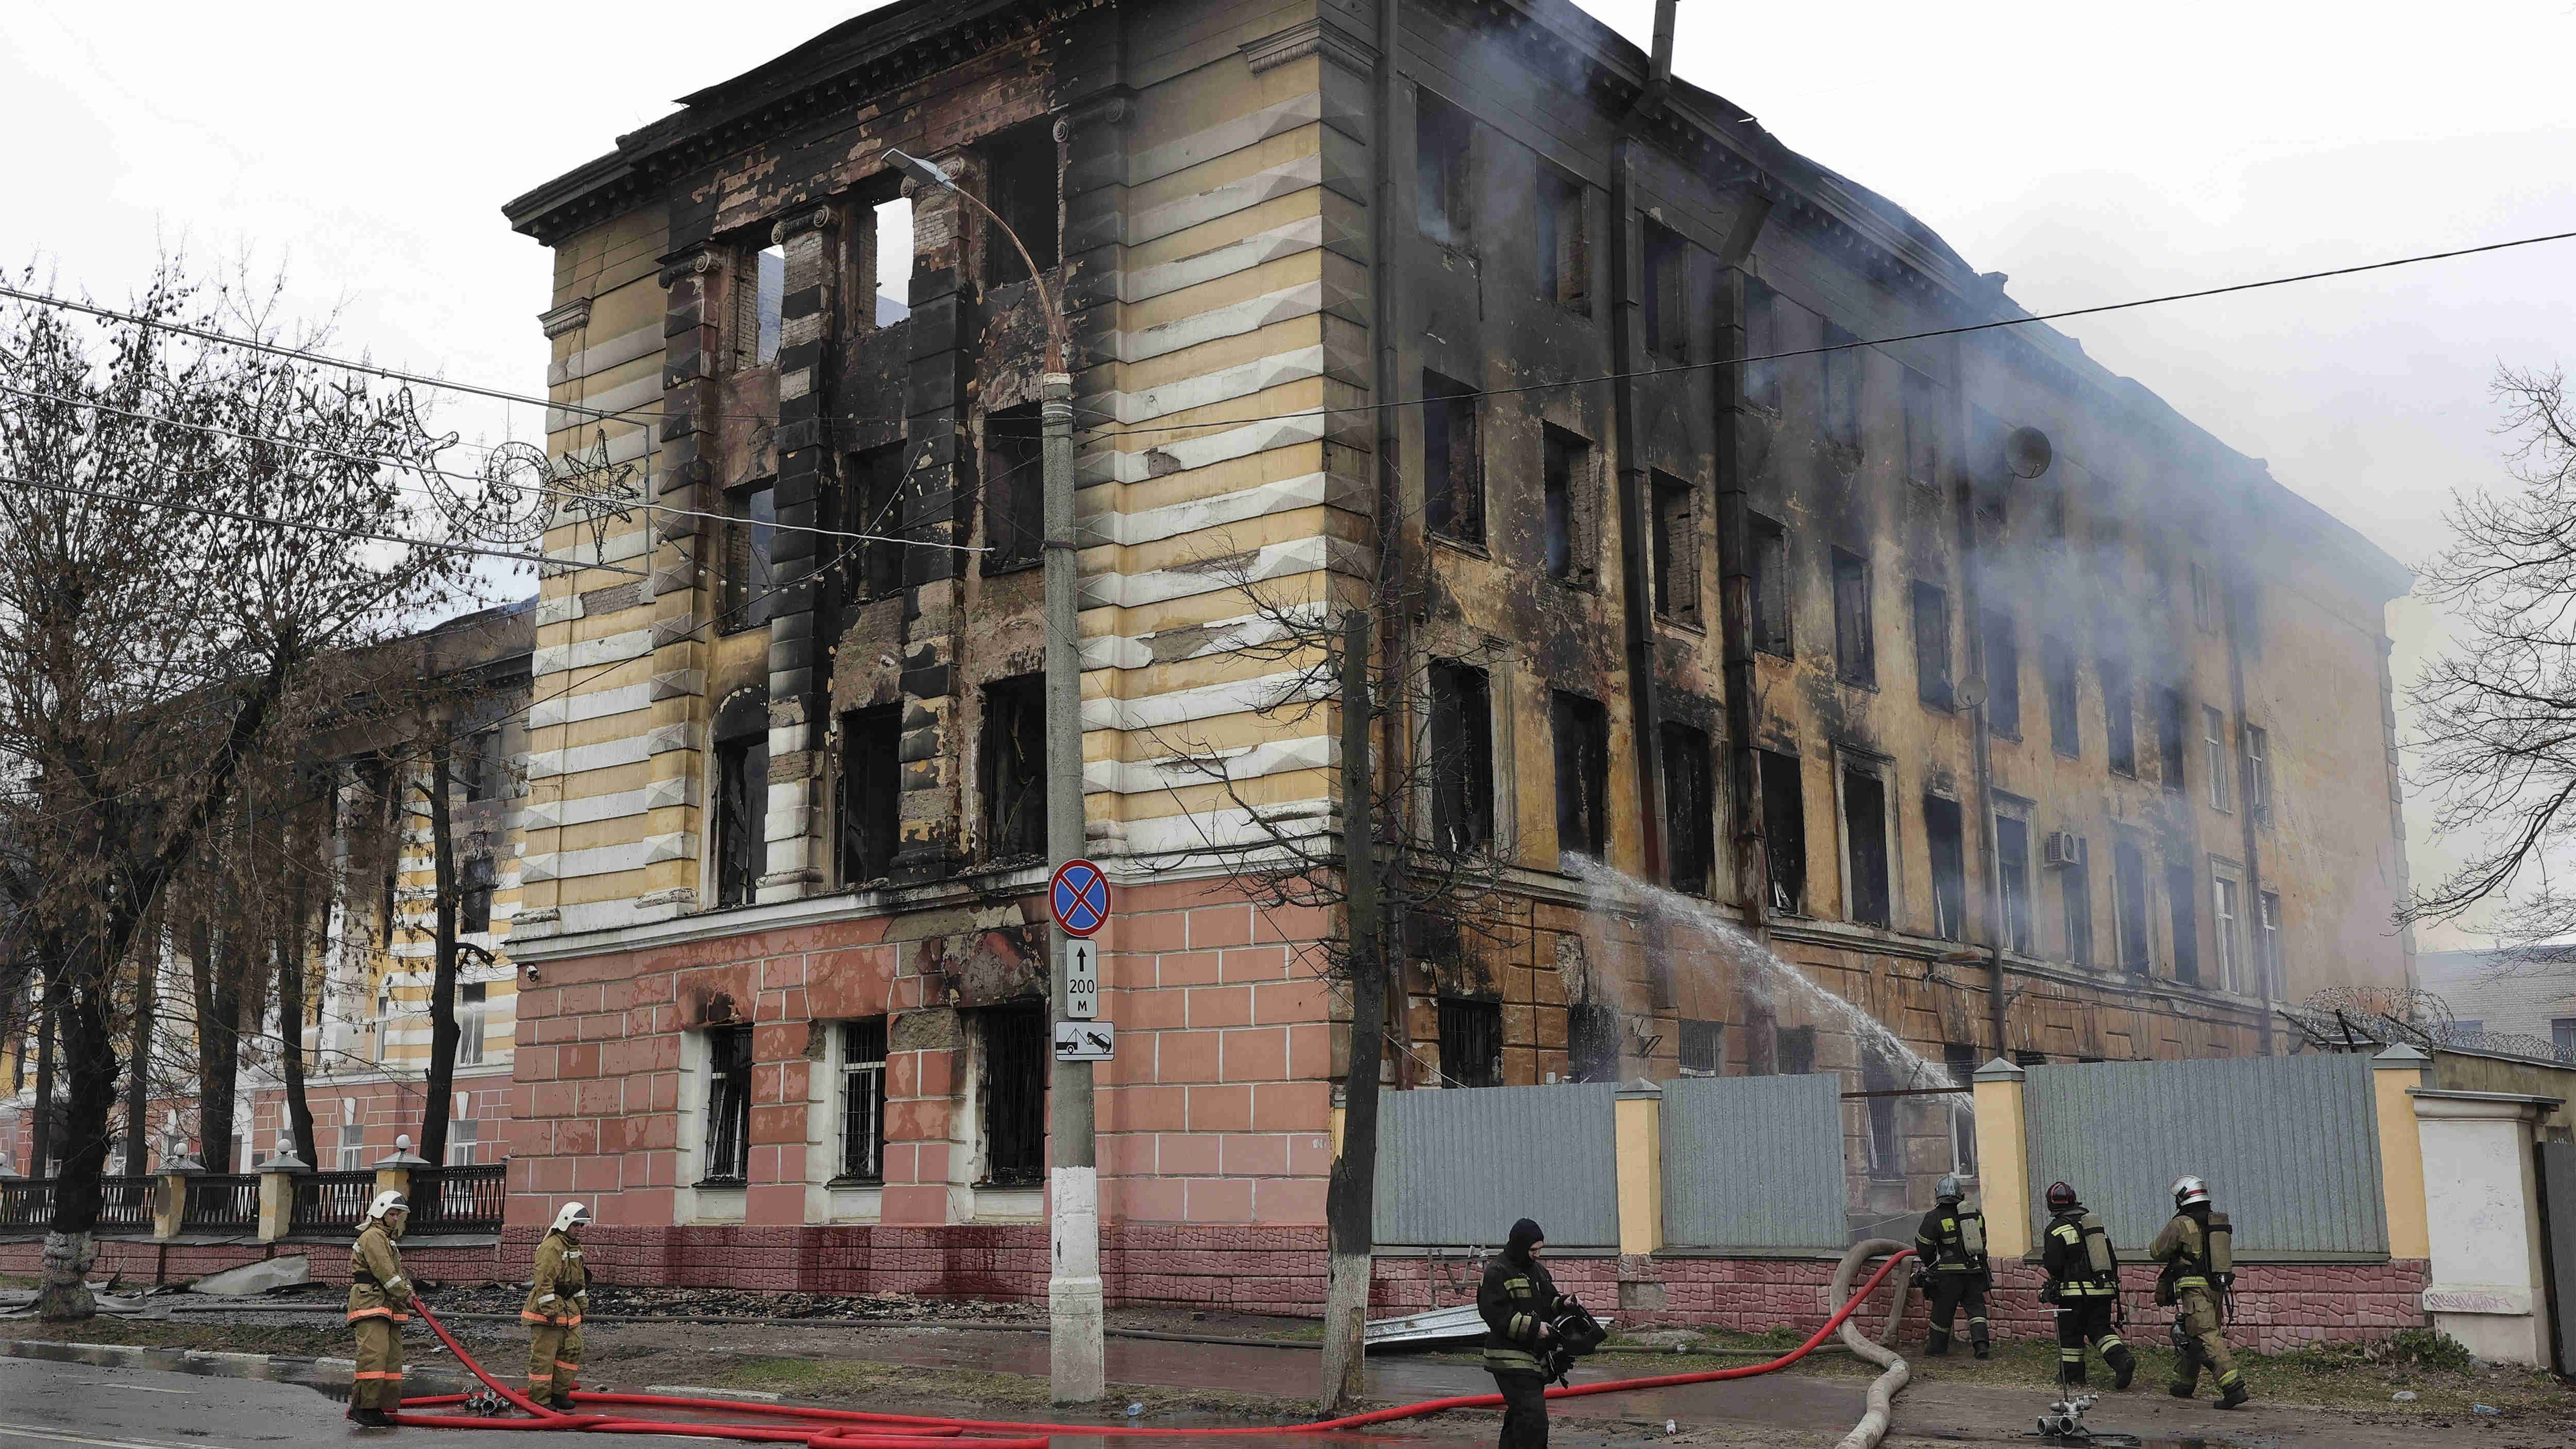 【追蹤報道】俄國防部研究所火災事故遇難人數升至11人